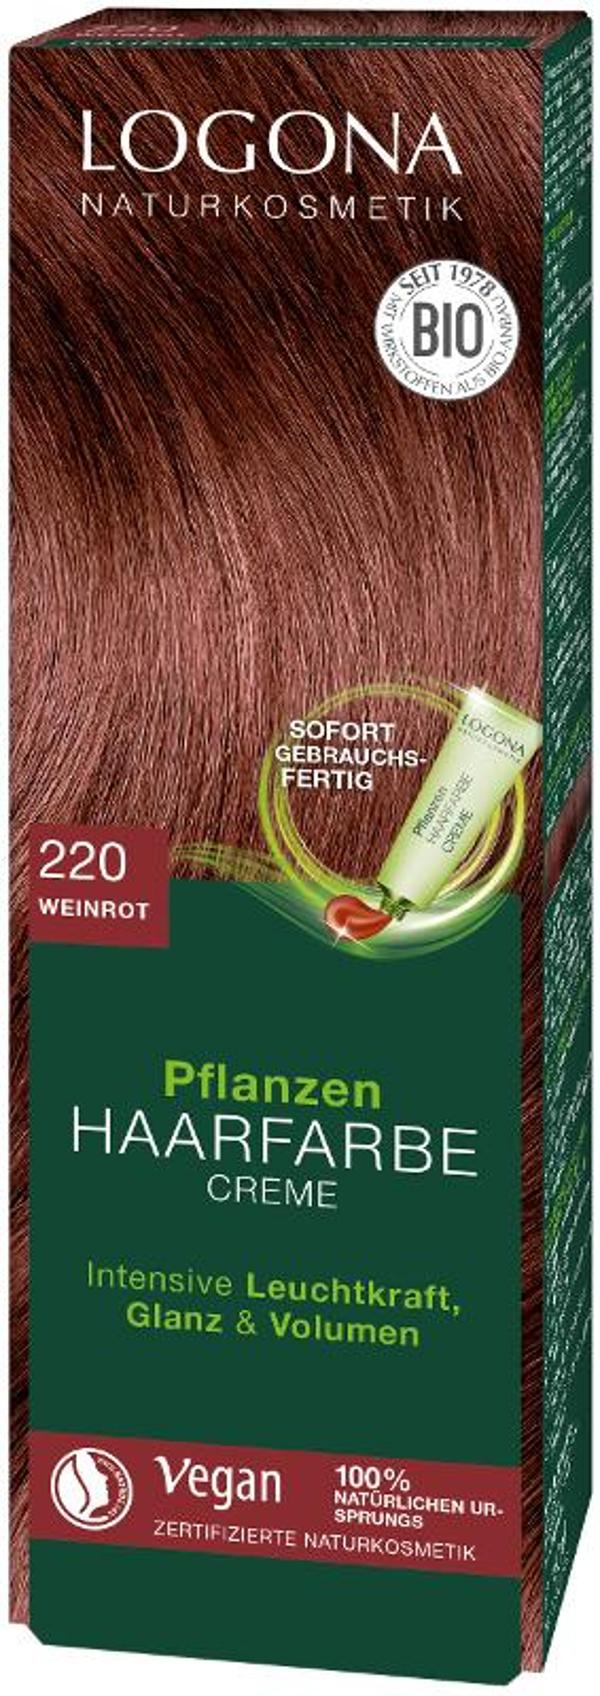 Produktfoto zu Pflanzen Haarfarbe Creme 220 weinrot 150ml